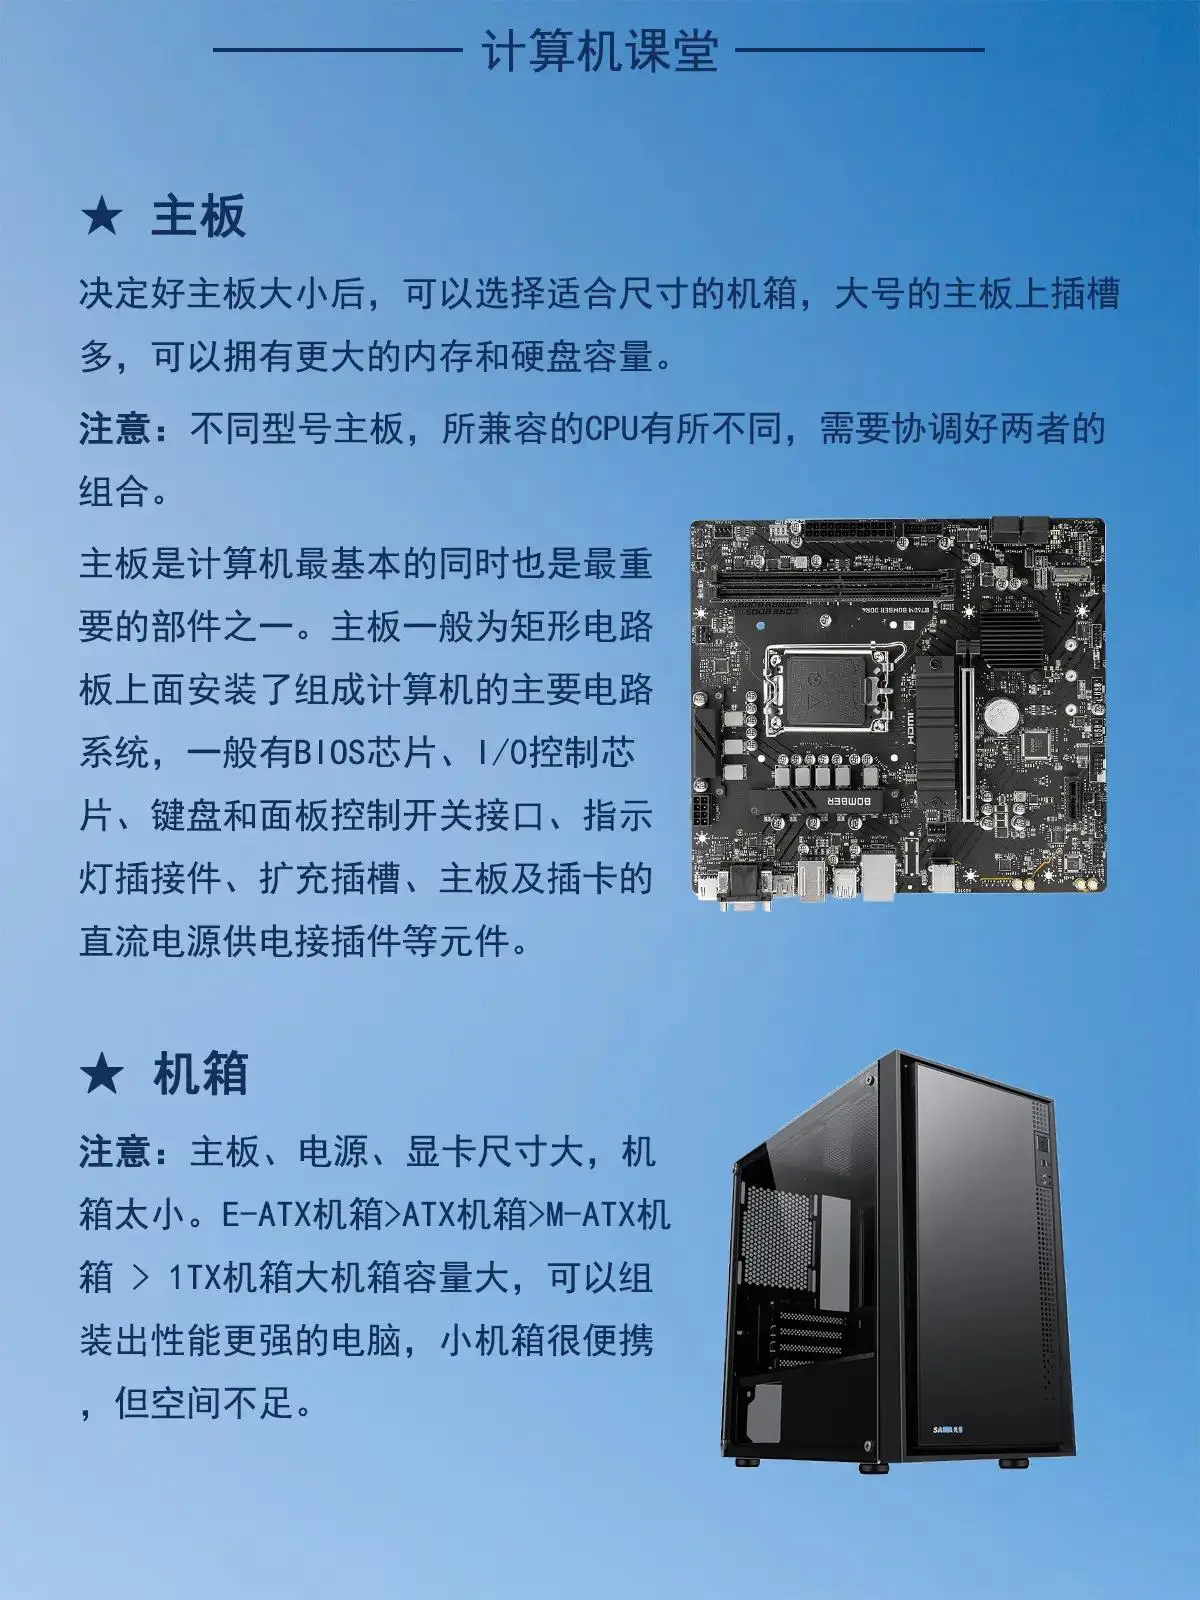 如何选择和搭配优质电脑硬件？关键在于CPU、内存和显卡的合理配置  第1张